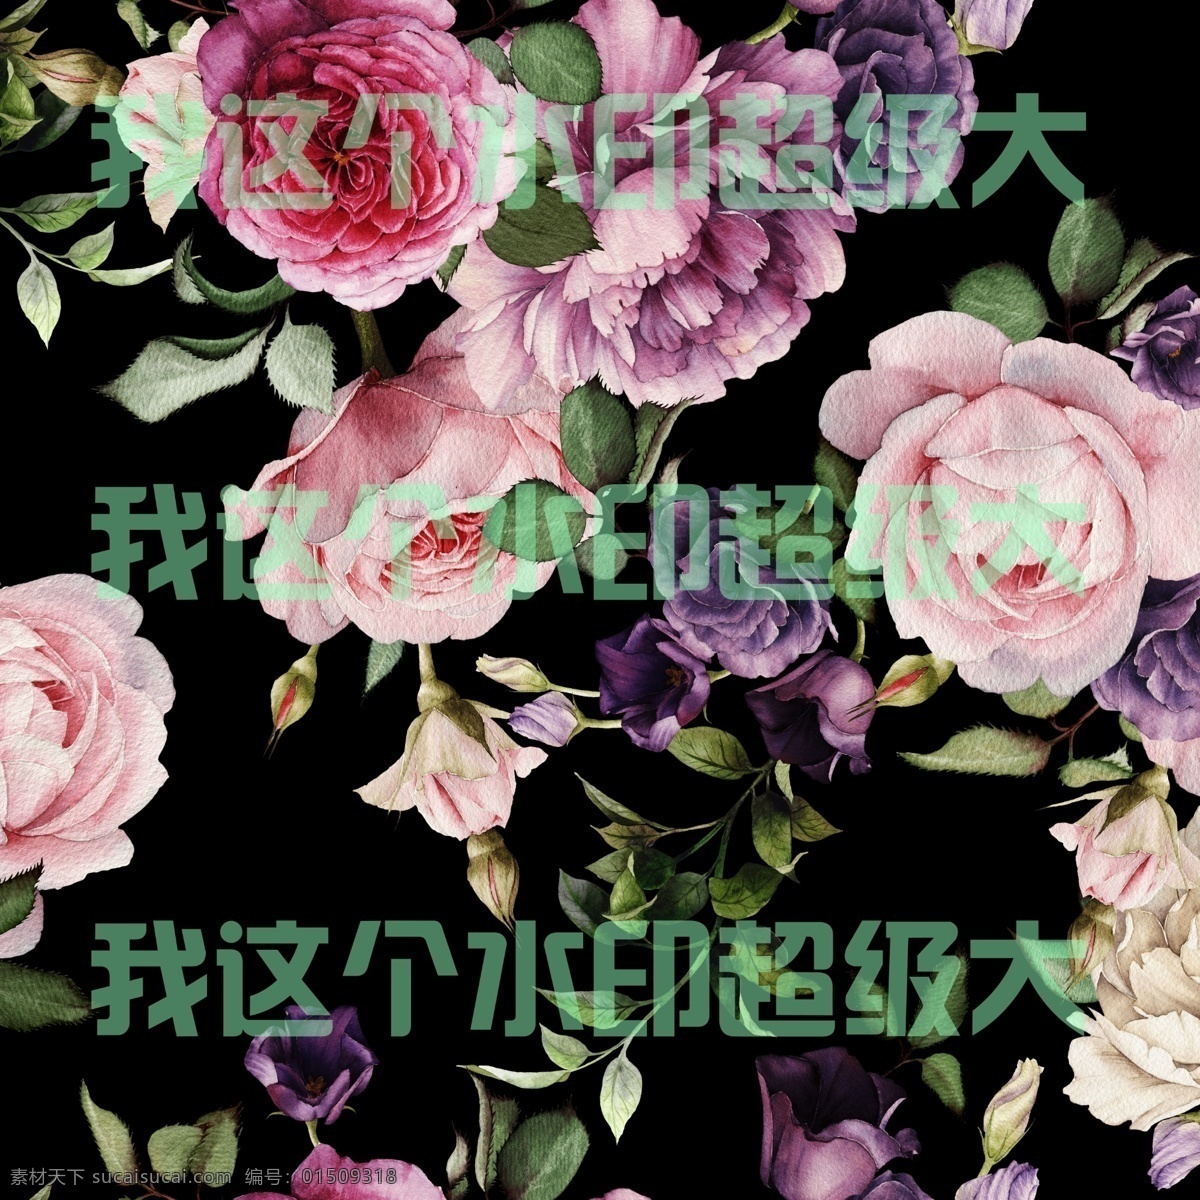 玫瑰花 手绘玫瑰 水彩玫瑰 印刷花卉 手机壳素材 玄关背景墙 电视背景墙 背景墙图案 花朵图案 玫瑰 玫瑰素材 分层